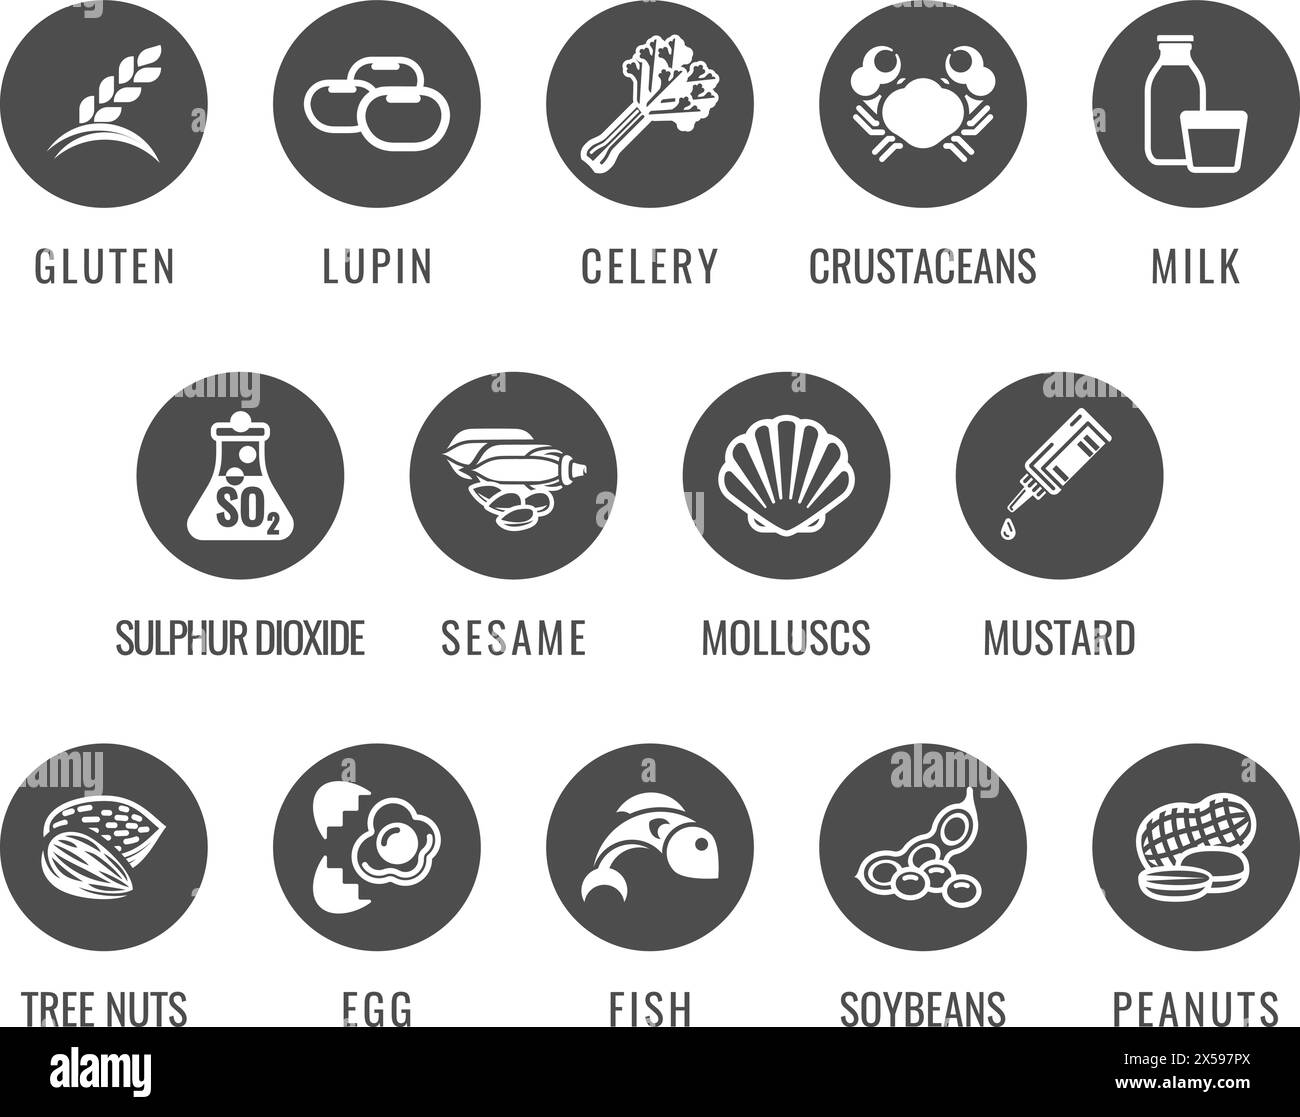 Allergen Food Major Allergy Icons Stock Vector